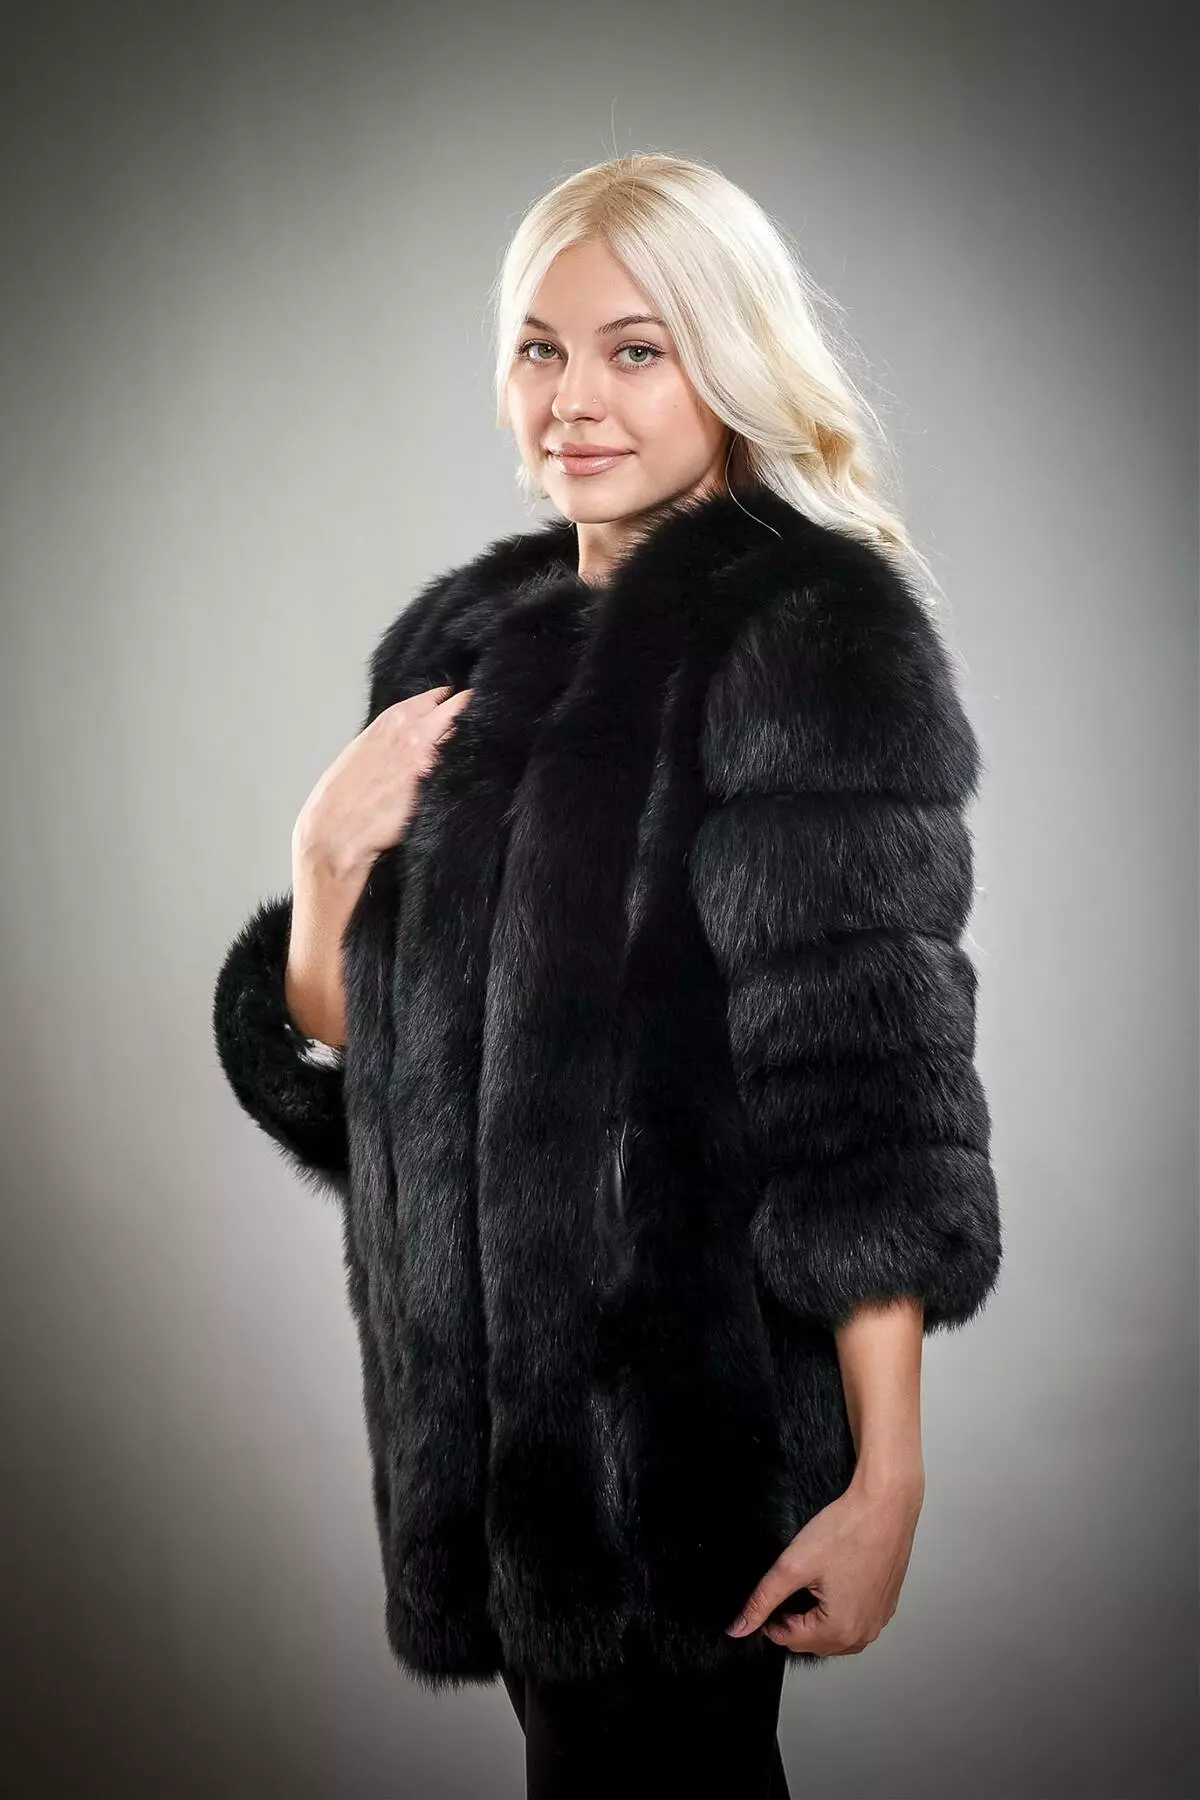 Black Fur Coat (63 sary): Colors Diamond, Long, mainty ary volo, vehivavy volom-borona avy amin'ny volom-borona mainty misy satroka, misy kiraro mena 691_13